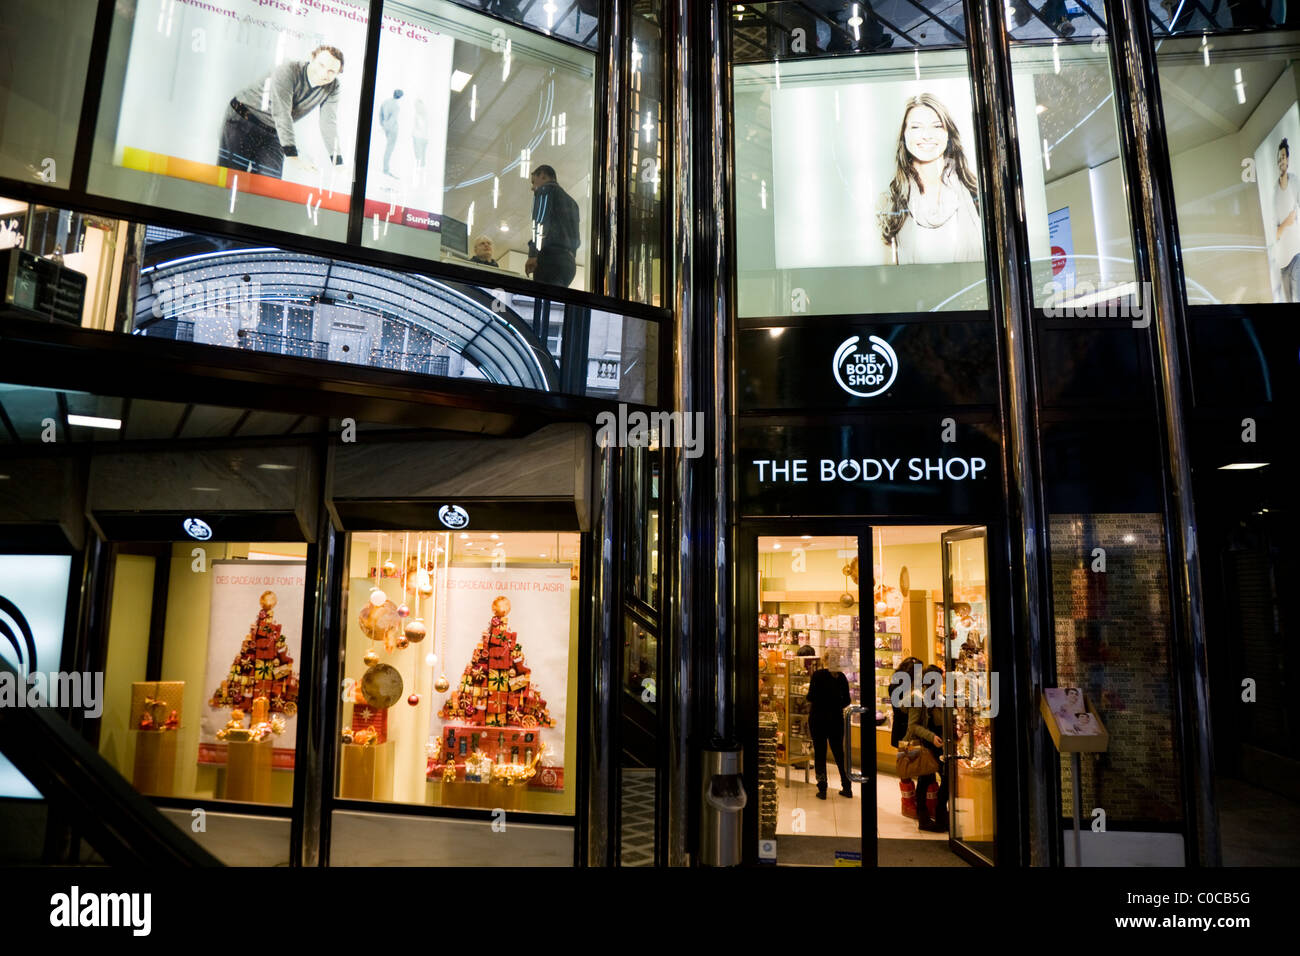 Il ramo del Body Shop / Bodyshop nel centro di confederazione, Ginevra. Swiss shopping mall / arcade / Negozi / Geneve Svizzera Foto Stock